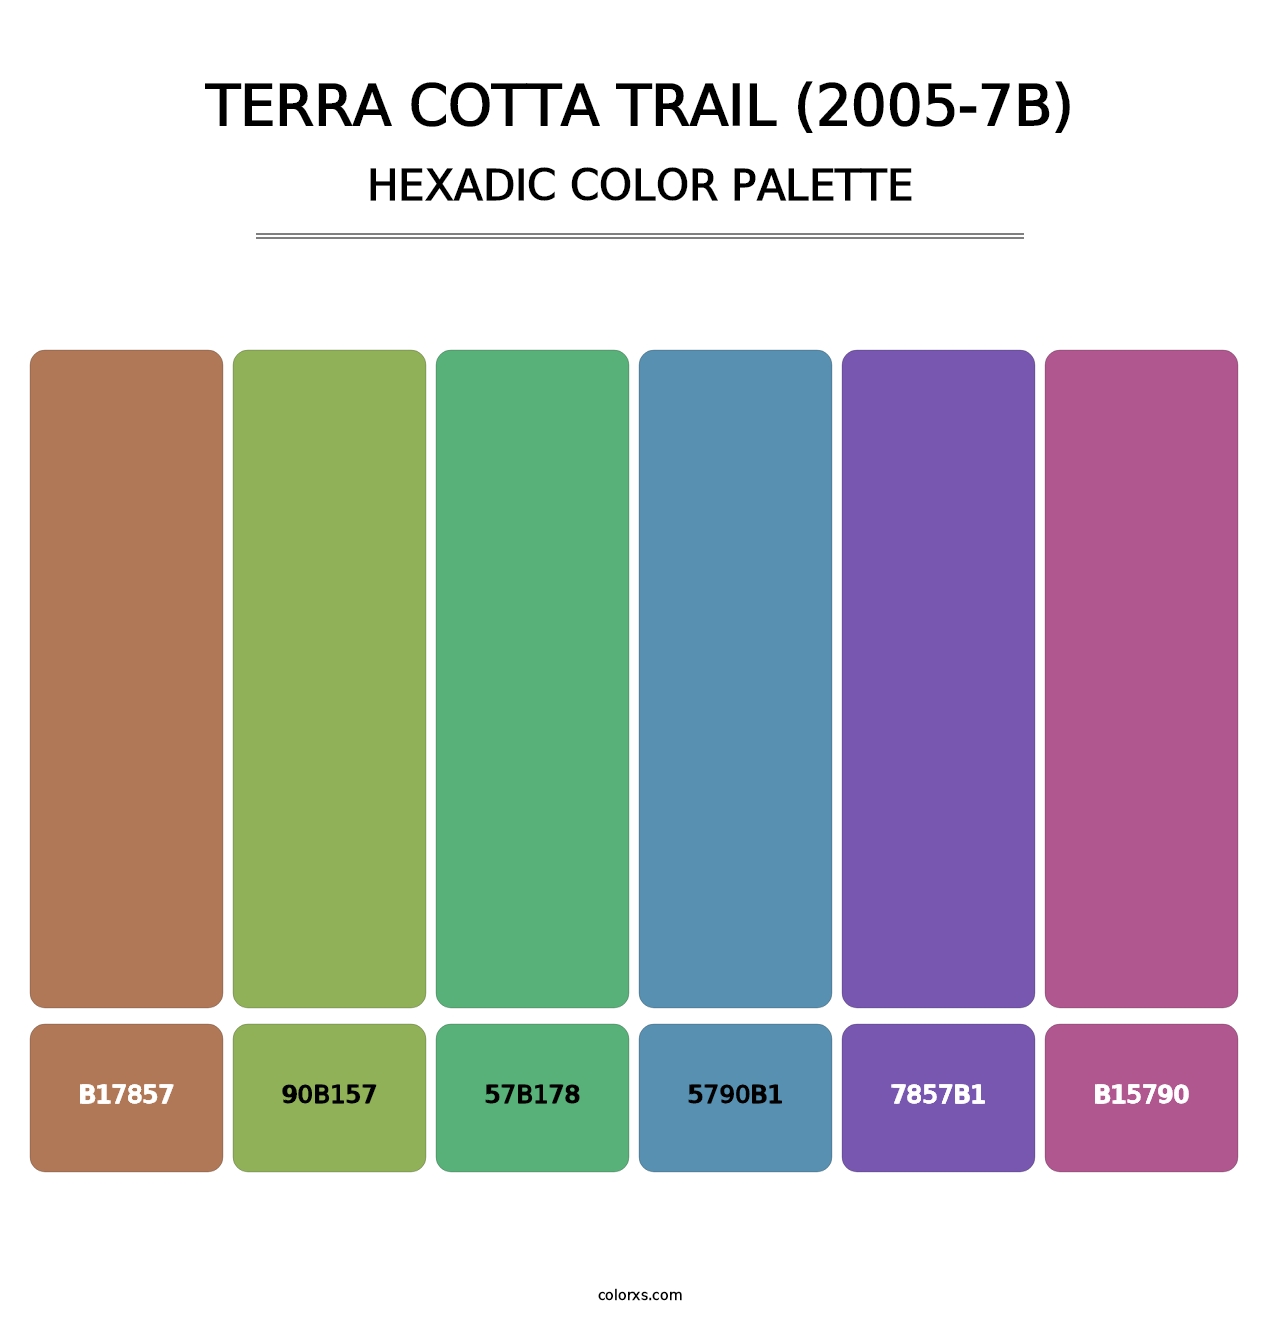 Terra Cotta Trail (2005-7B) - Hexadic Color Palette